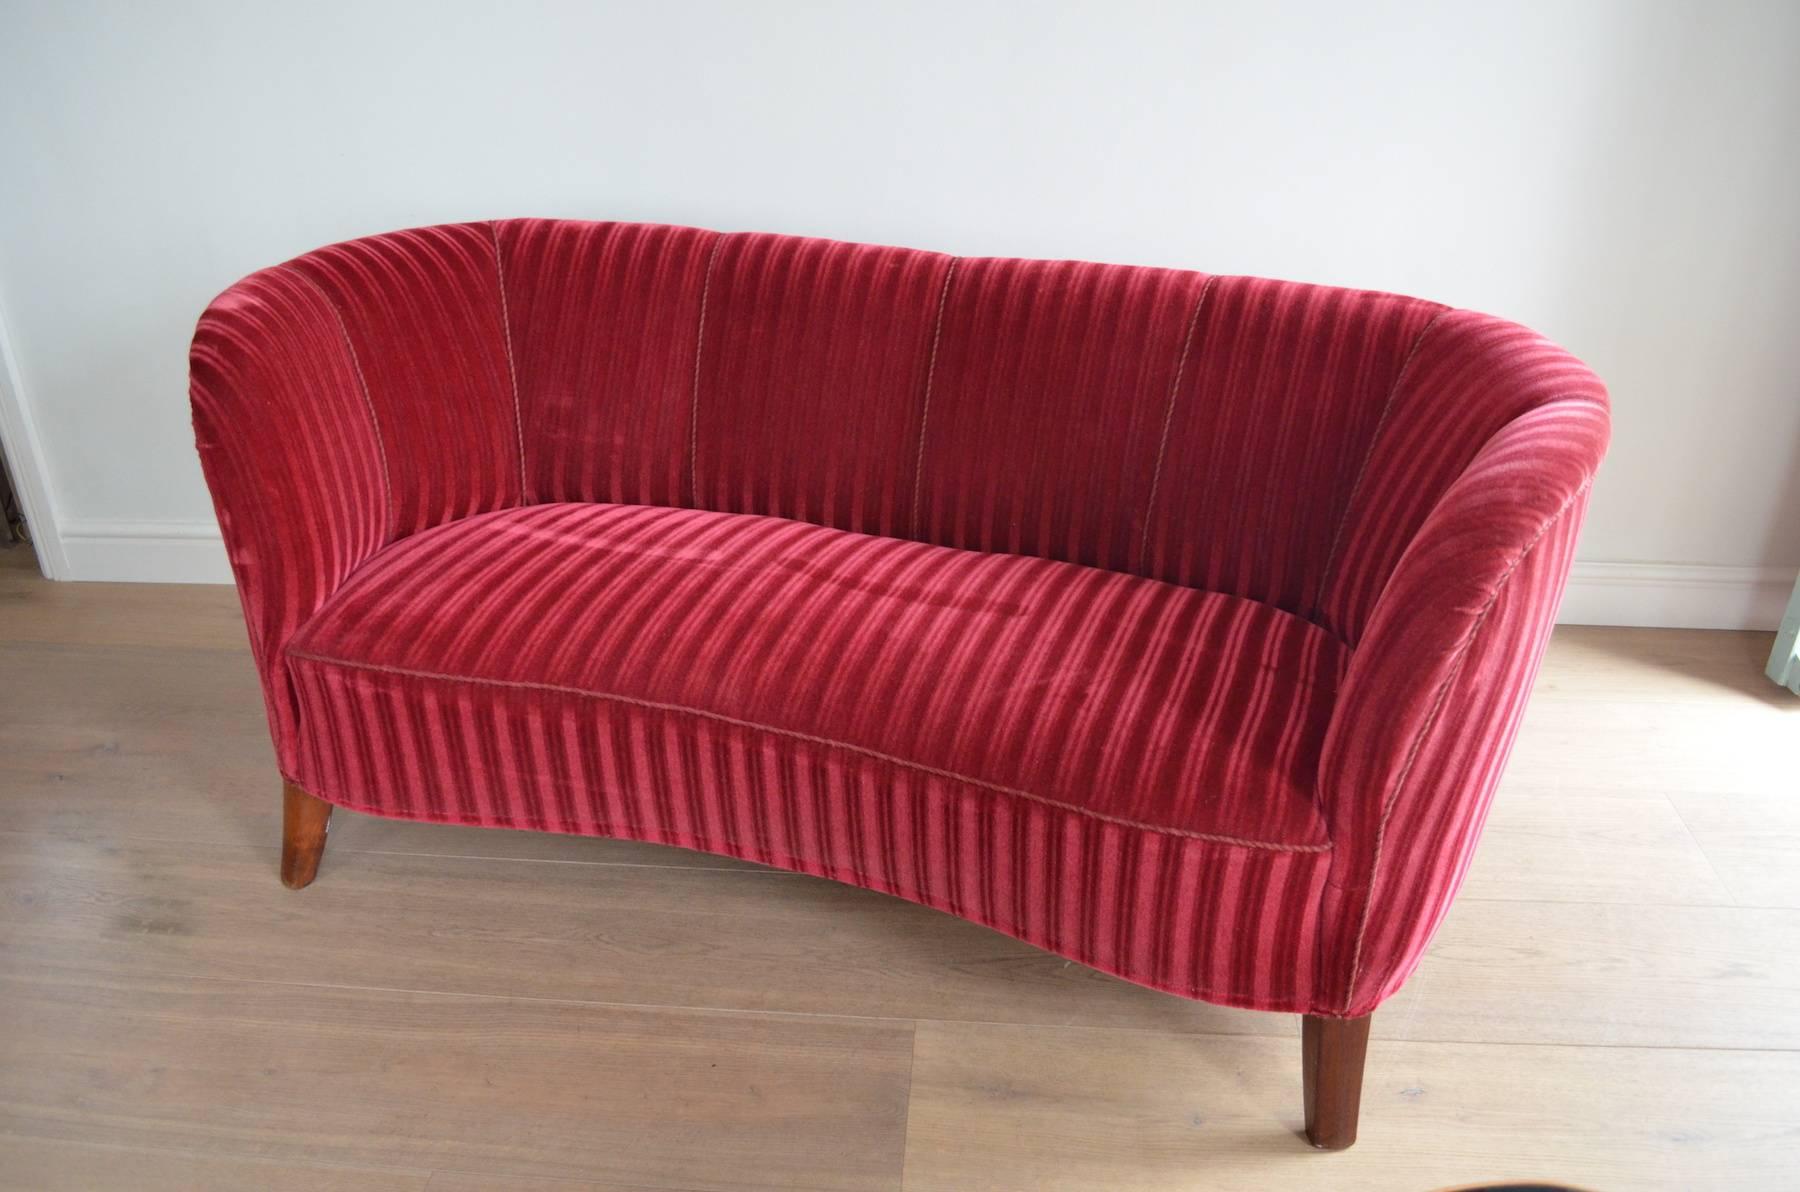 Danish 1930s-Early 1940s Art Deco Banana Form Red Velvet Sofa 6